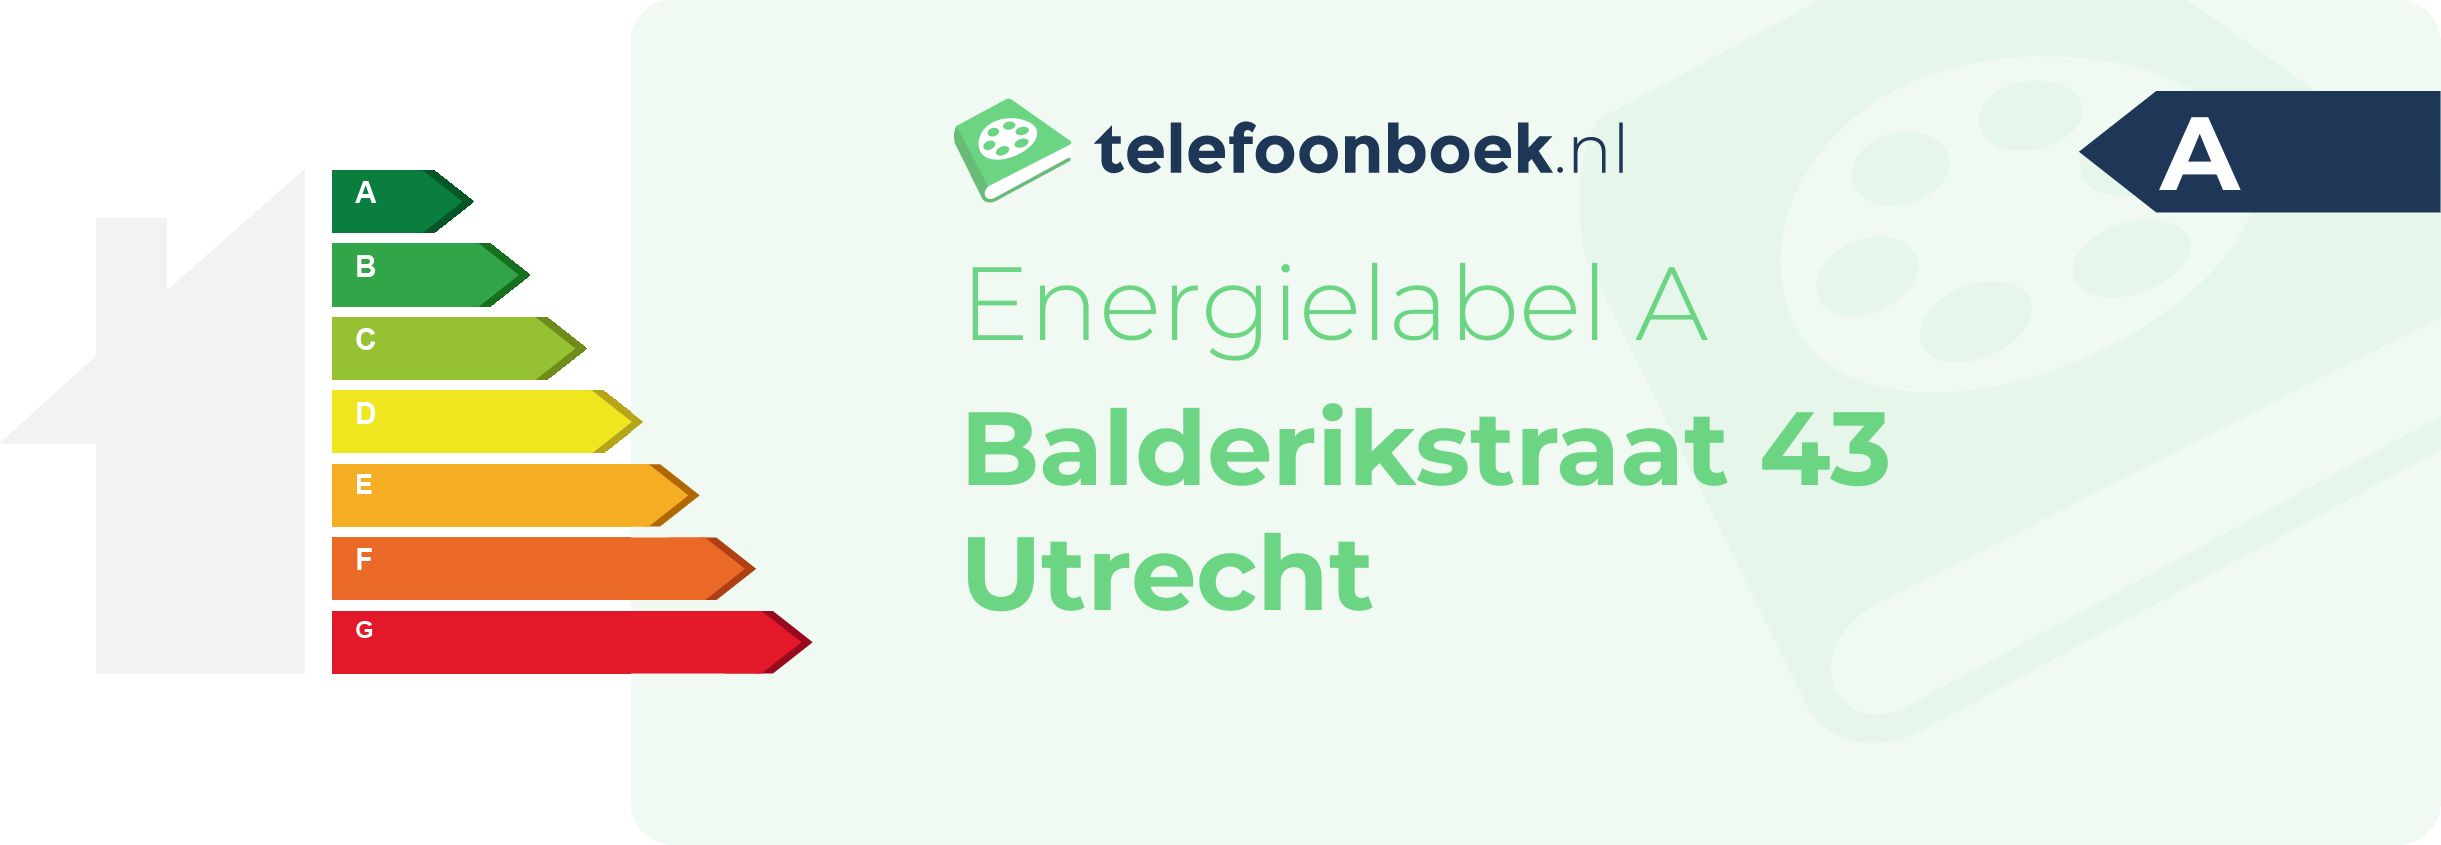 Energielabel Balderikstraat 43 Utrecht